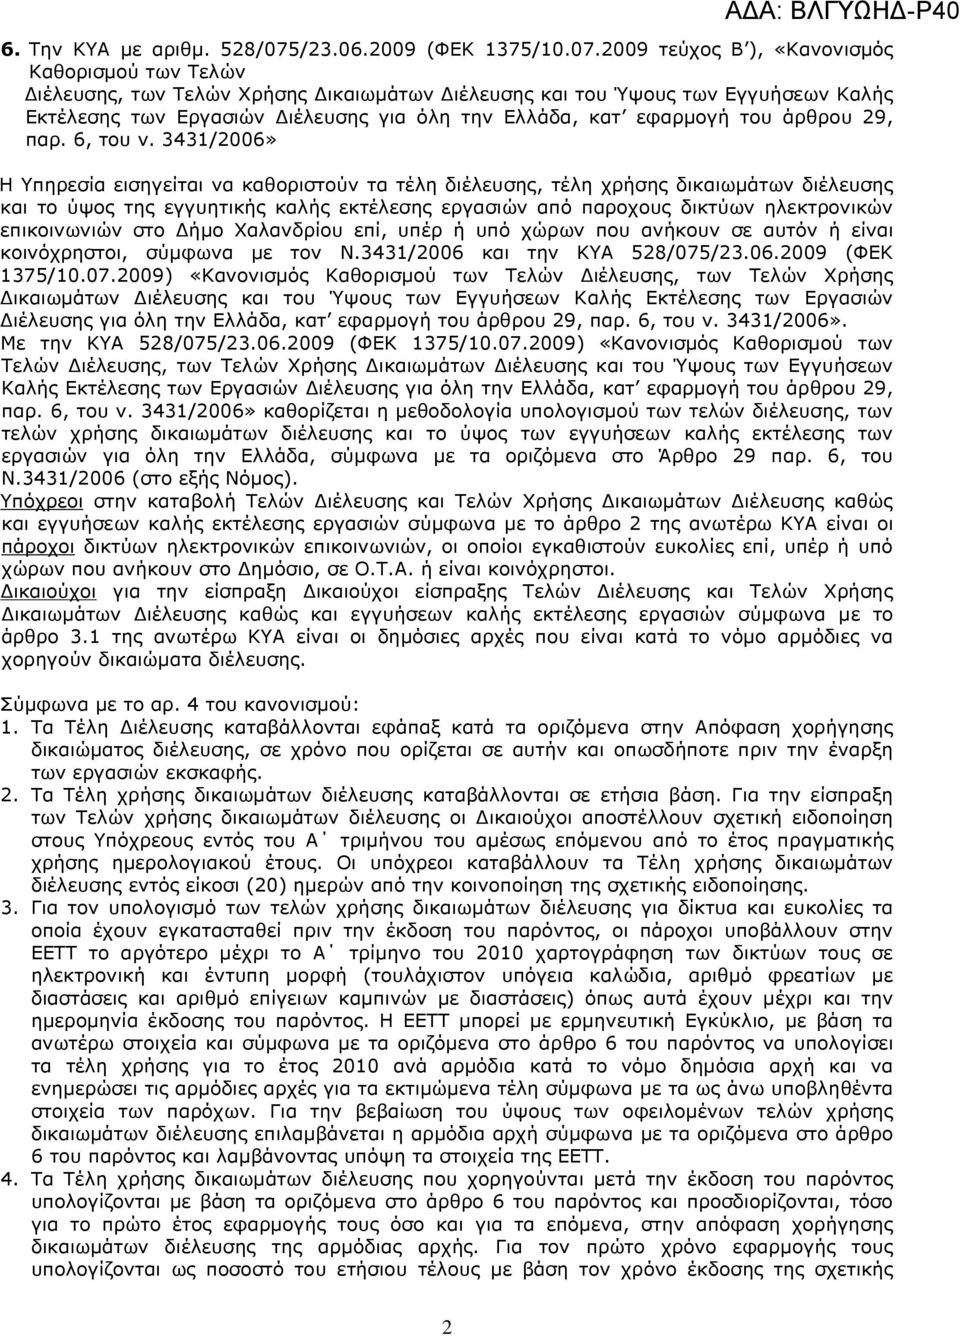 2009 τεύχος Β ), «Κανονισµός Καθορισµού των Τελών ιέλευσης, των Τελών Χρήσης ικαιωµάτων ιέλευσης και του Ύψους των Εγγυήσεων Καλής Εκτέλεσης των Εργασιών ιέλευσης για όλη την Ελλάδα, κατ εφαρµογή του